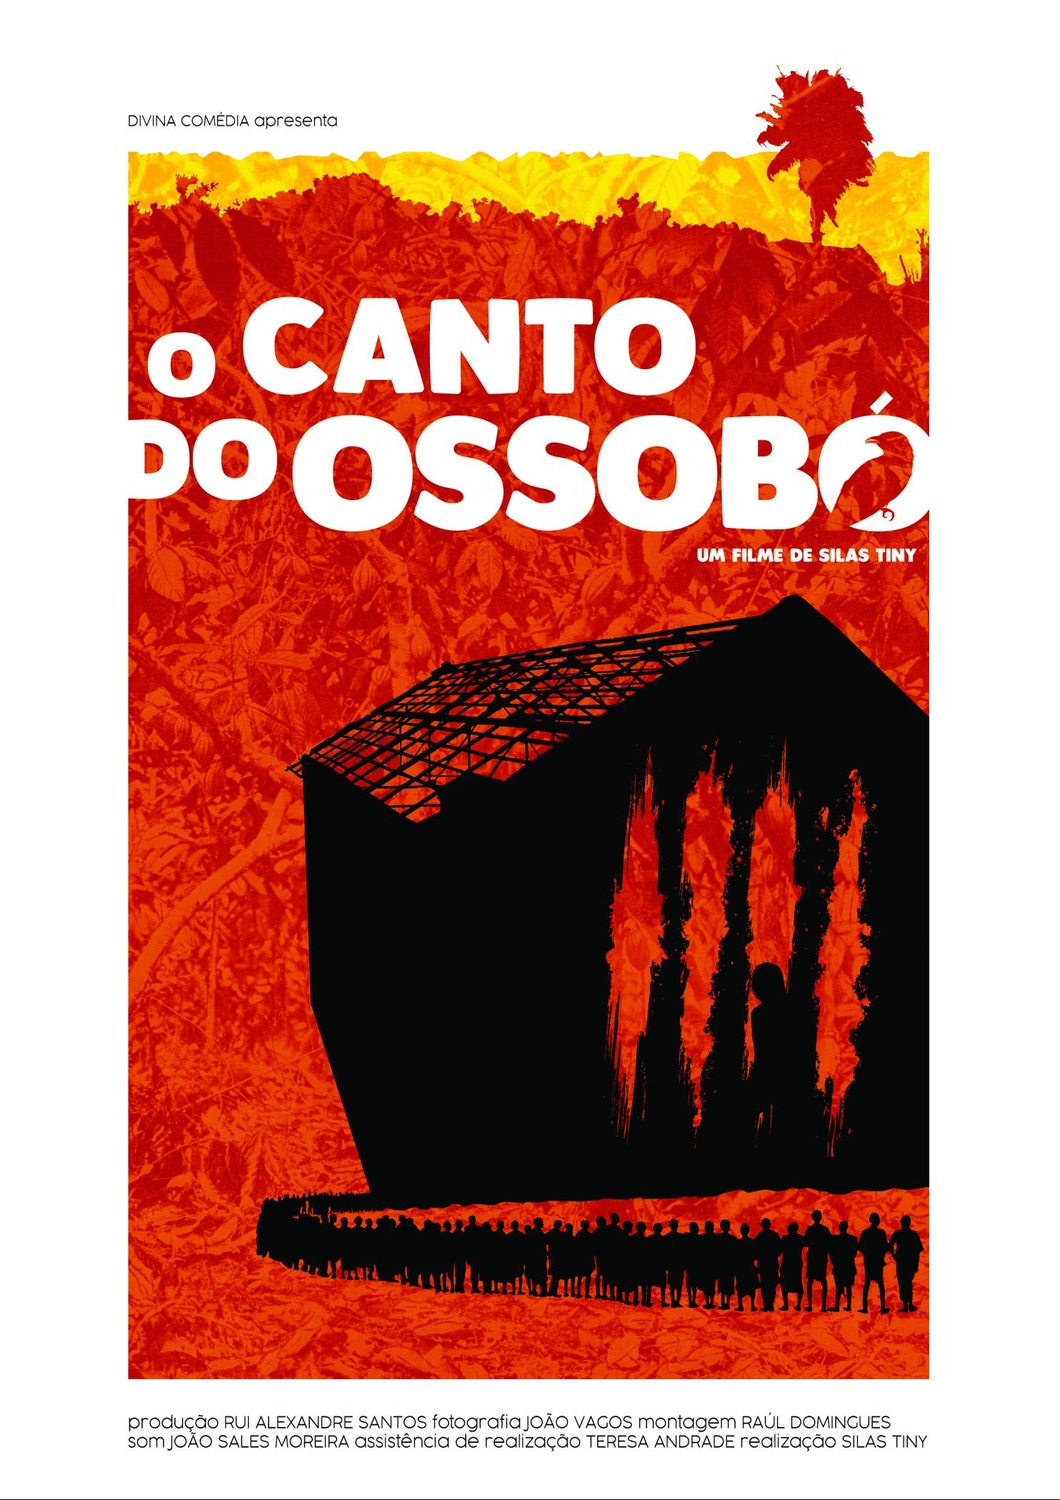 Extra Large Movie Poster Image for O Canto de Ossobó 